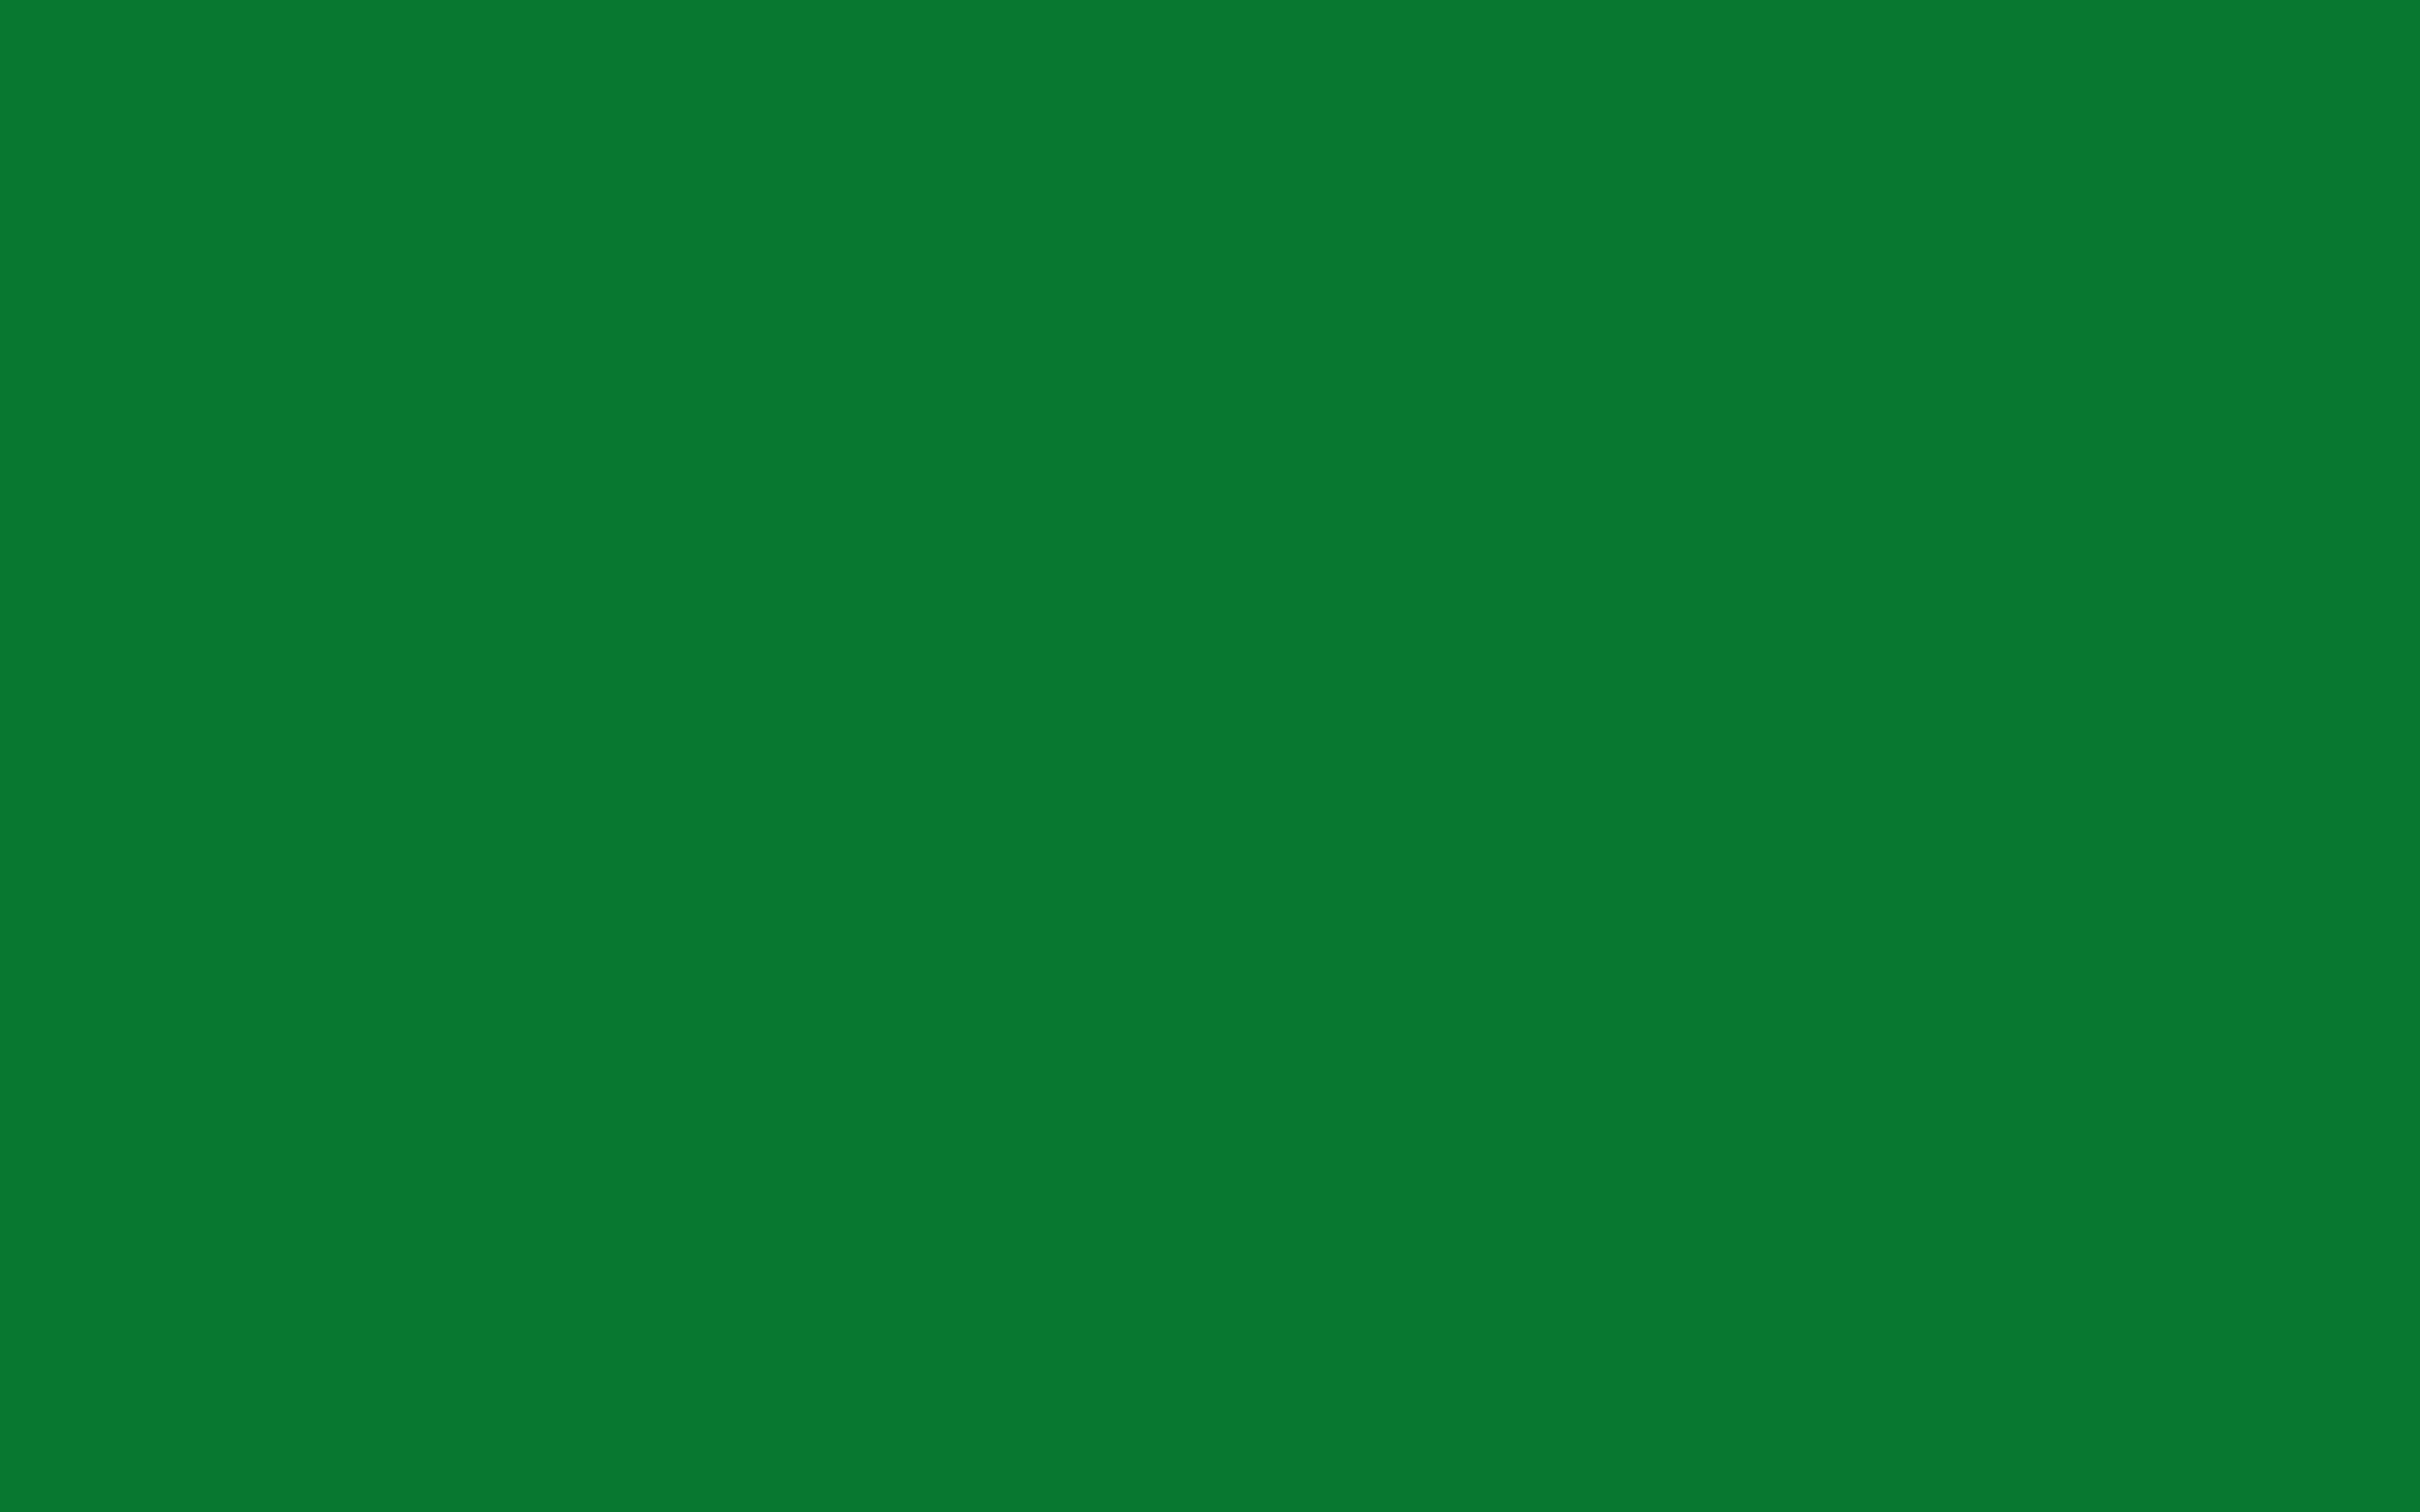 Green Solid Color Wallpaper Hd Wallpaper